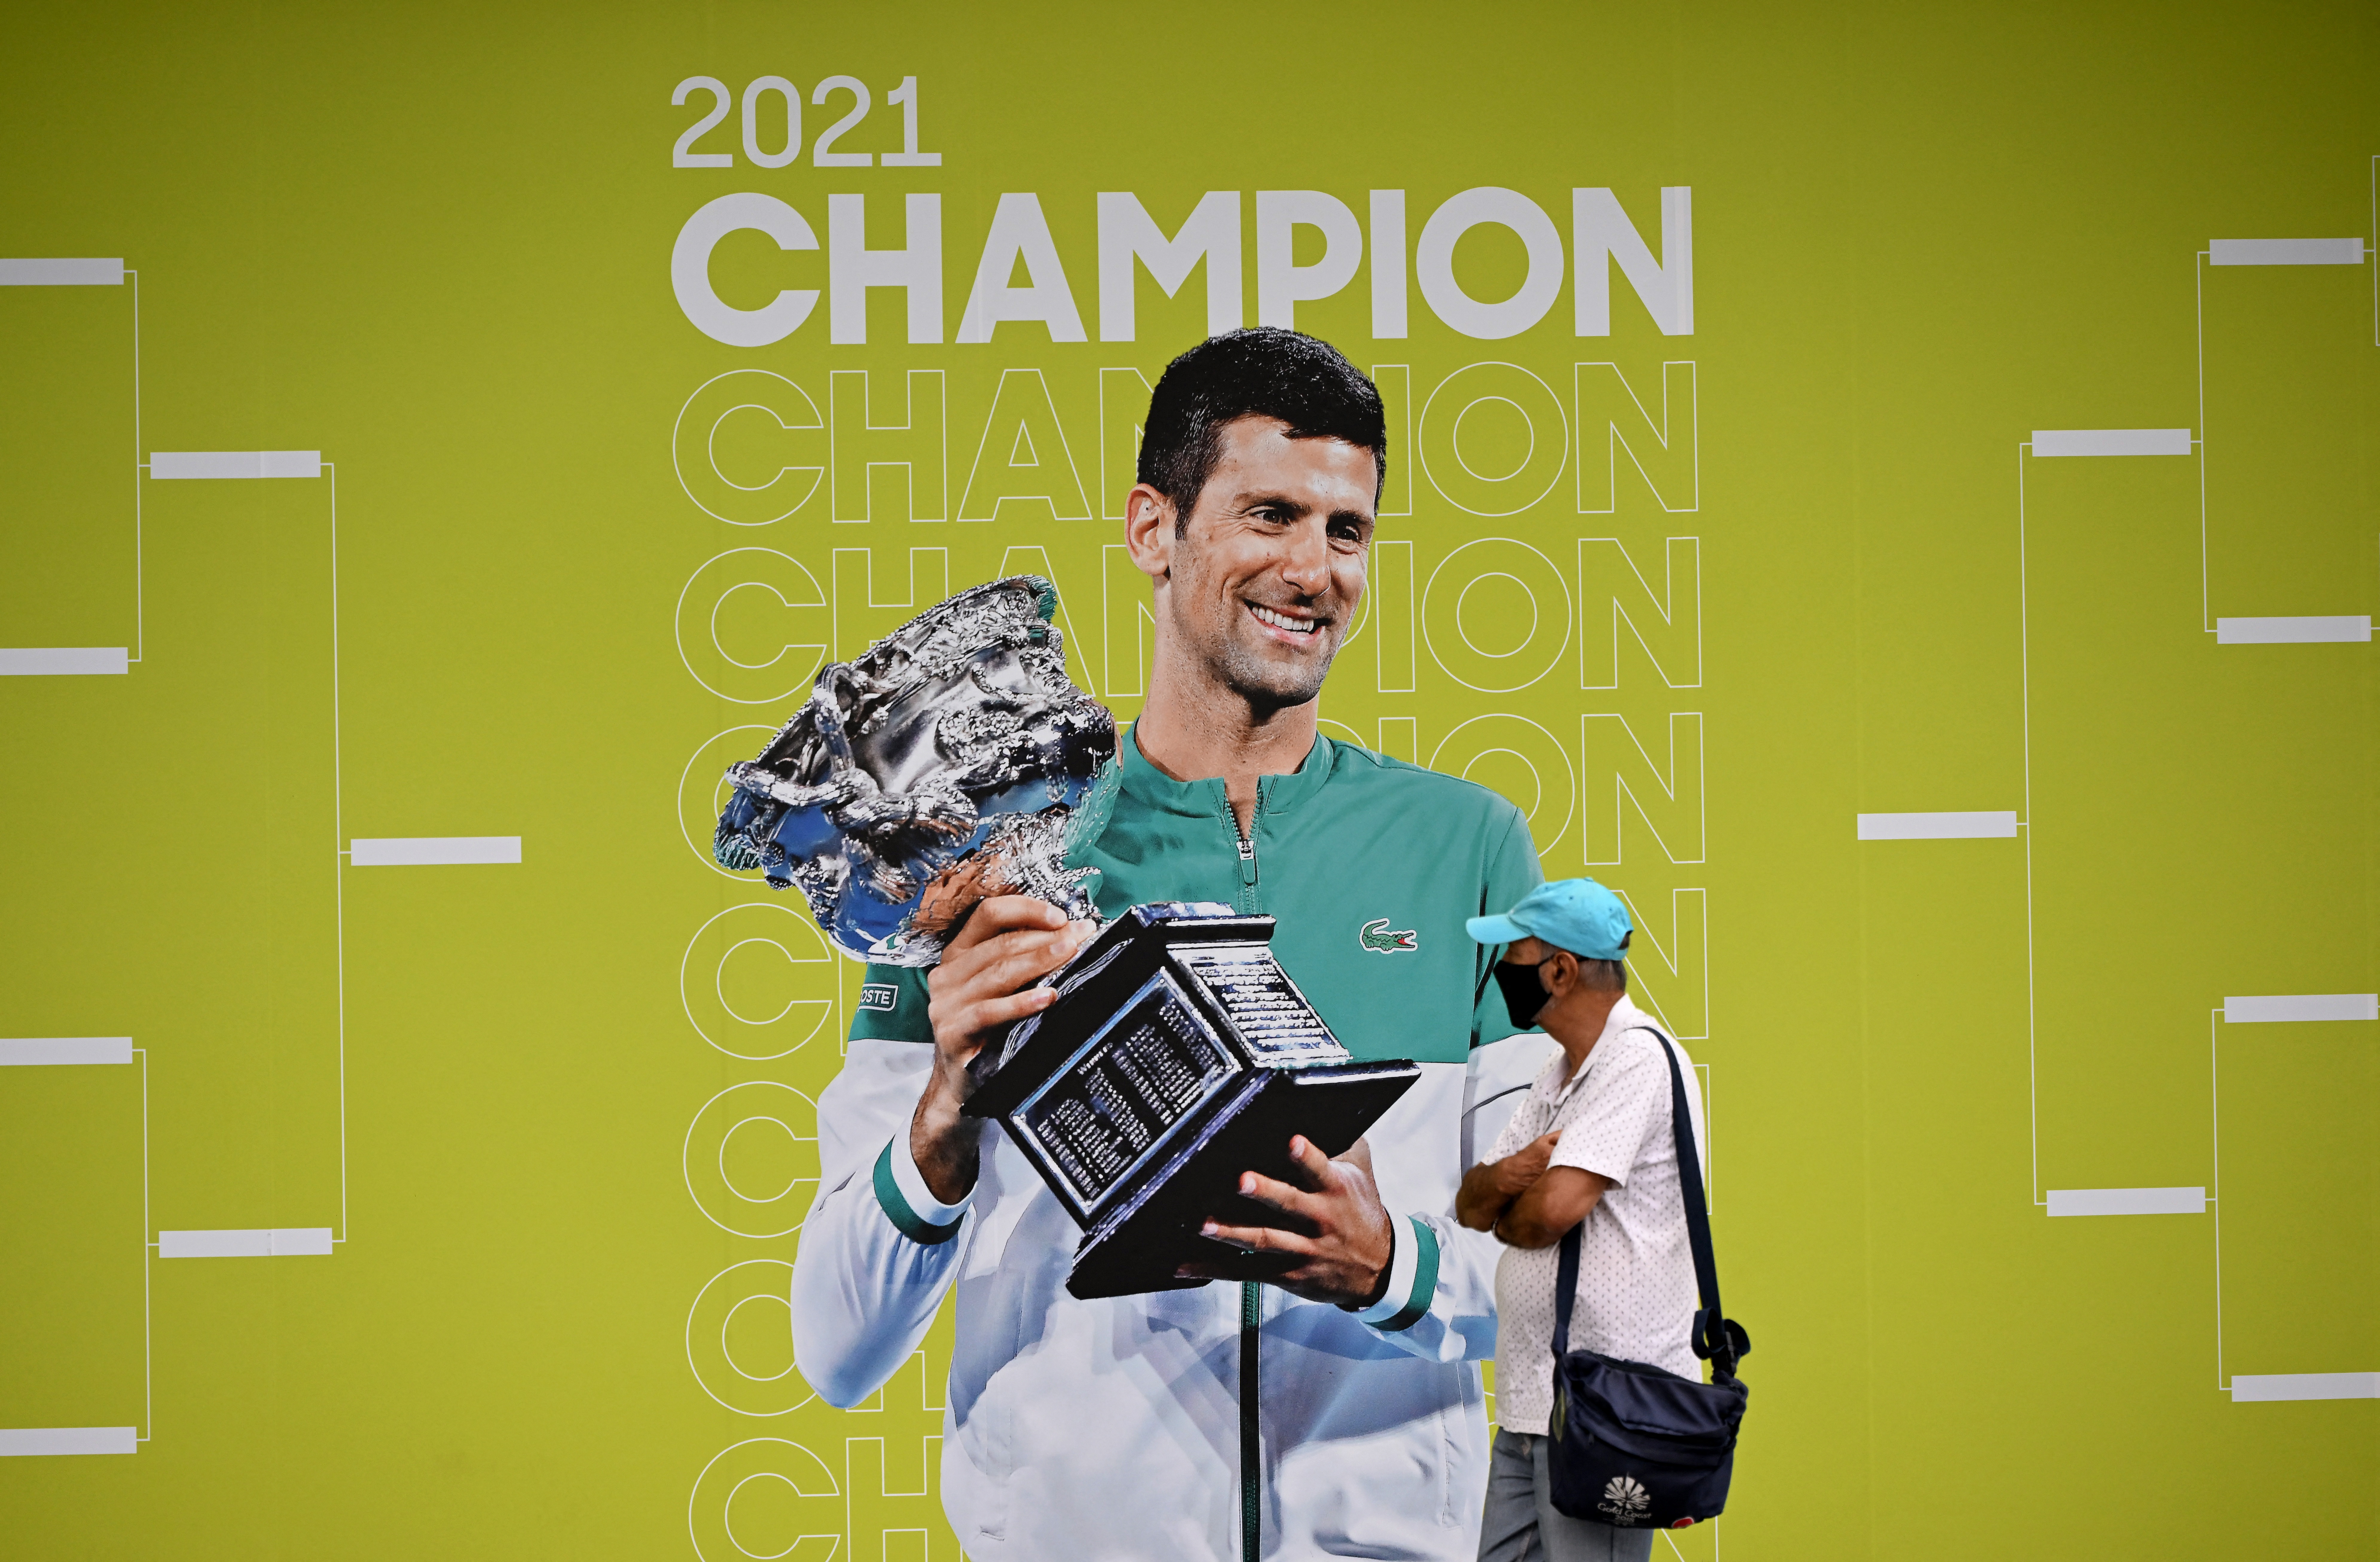 El campeón del tenis, Djokovic 